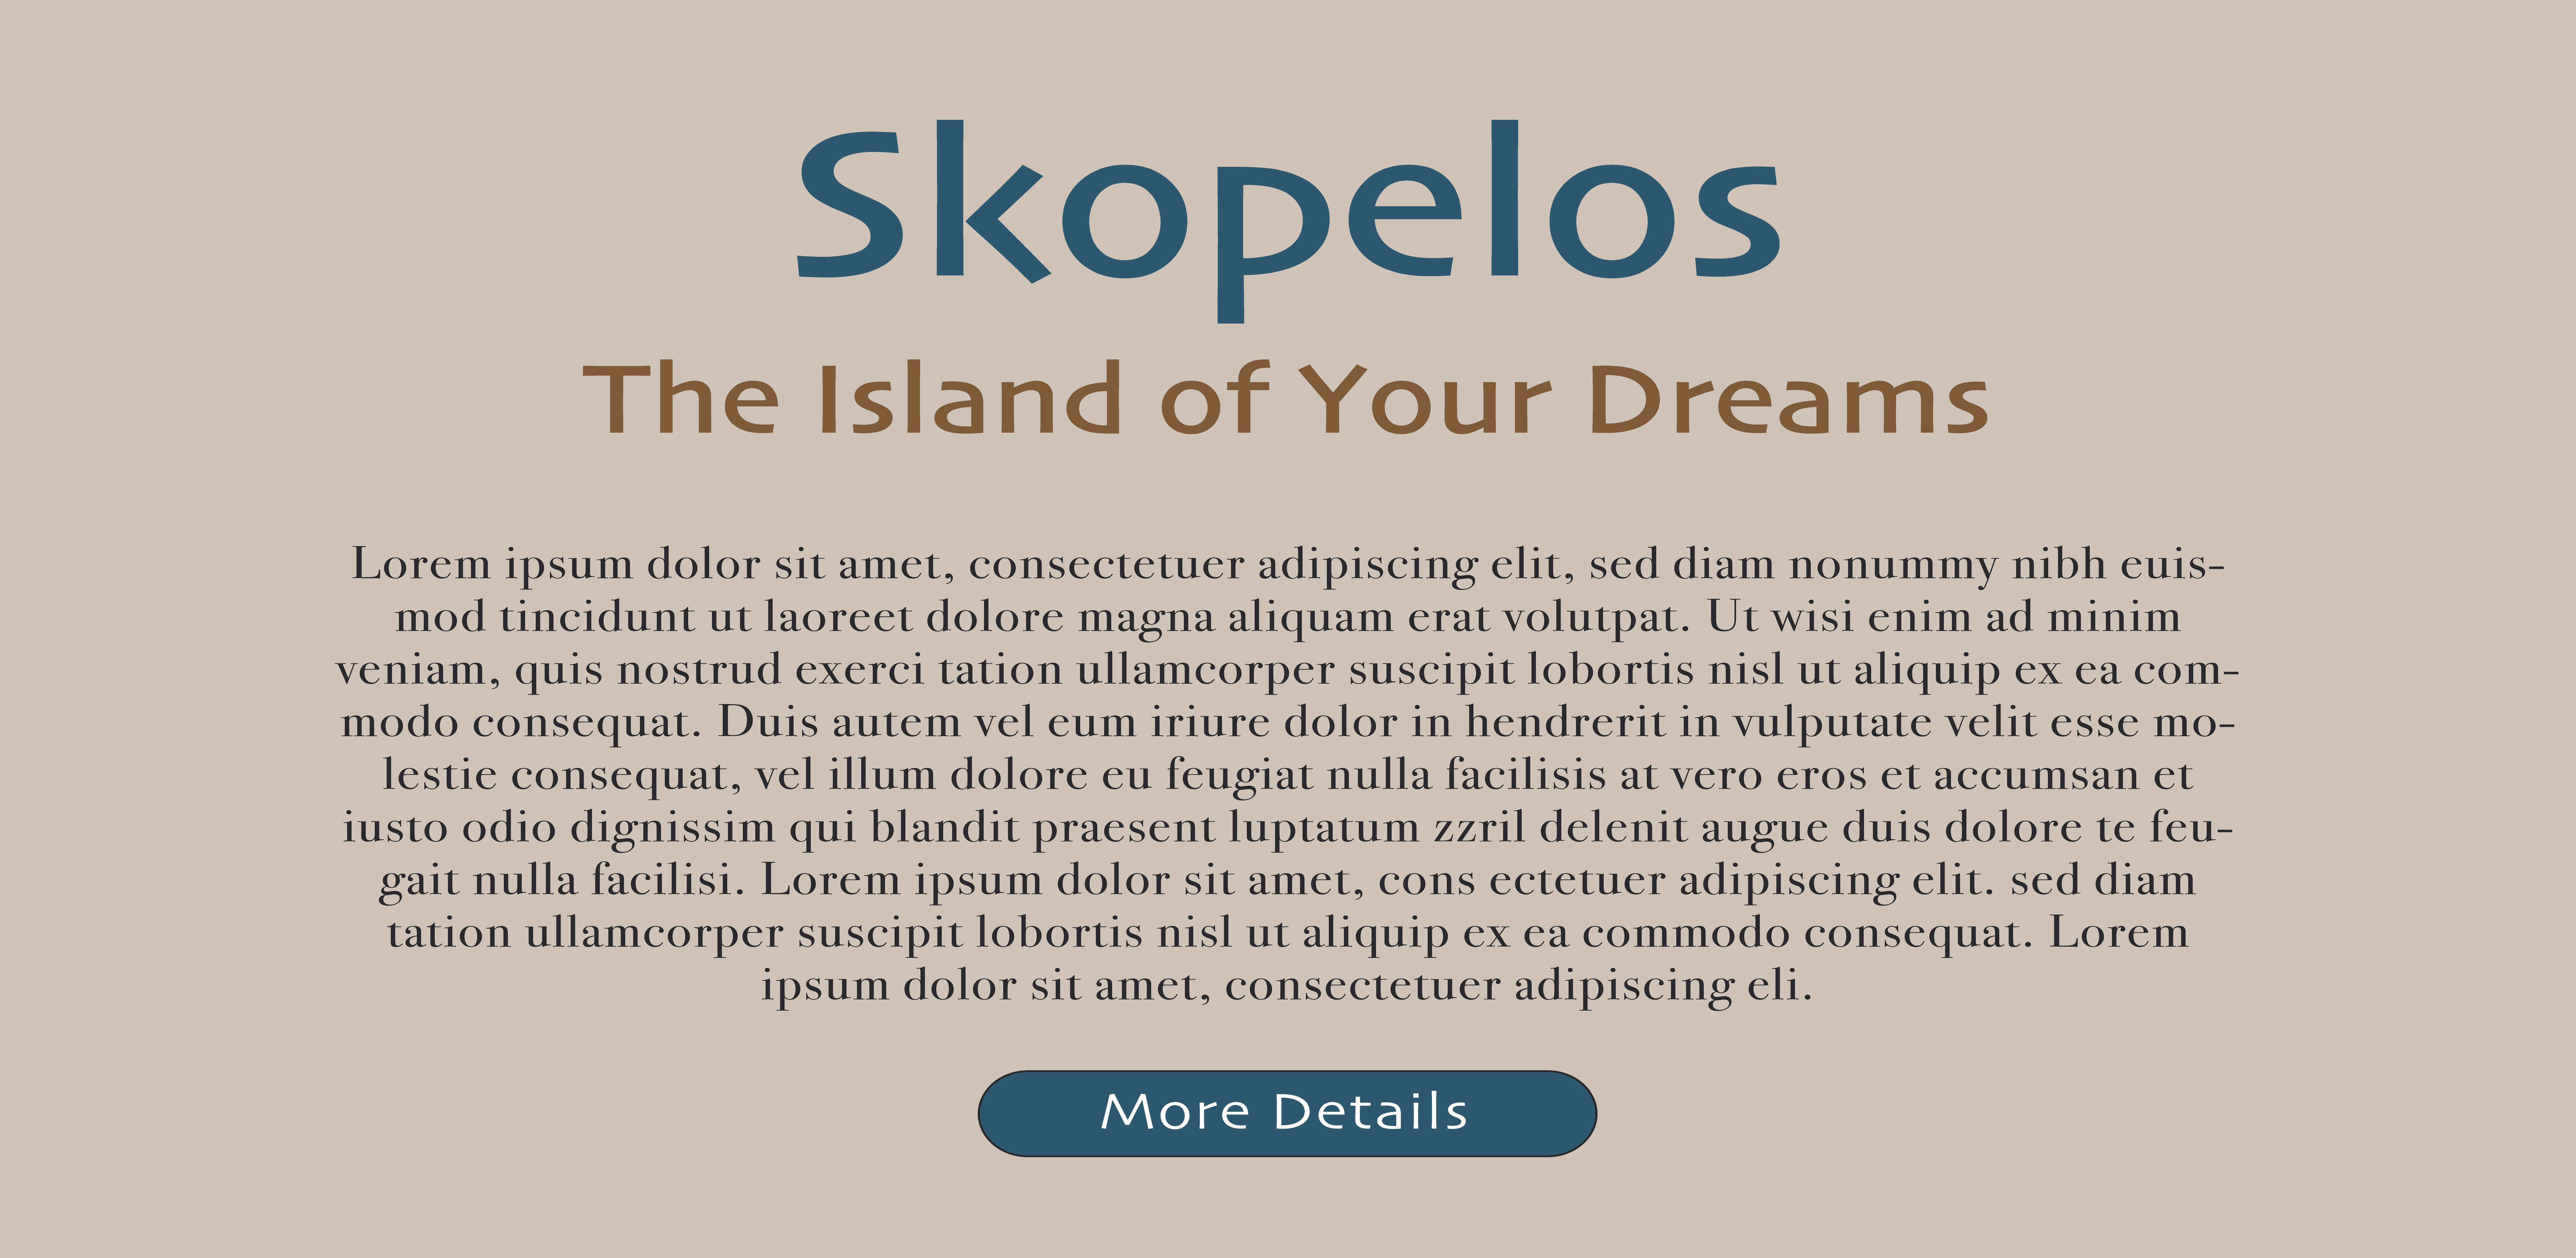 Skopelos travel brochure page 2